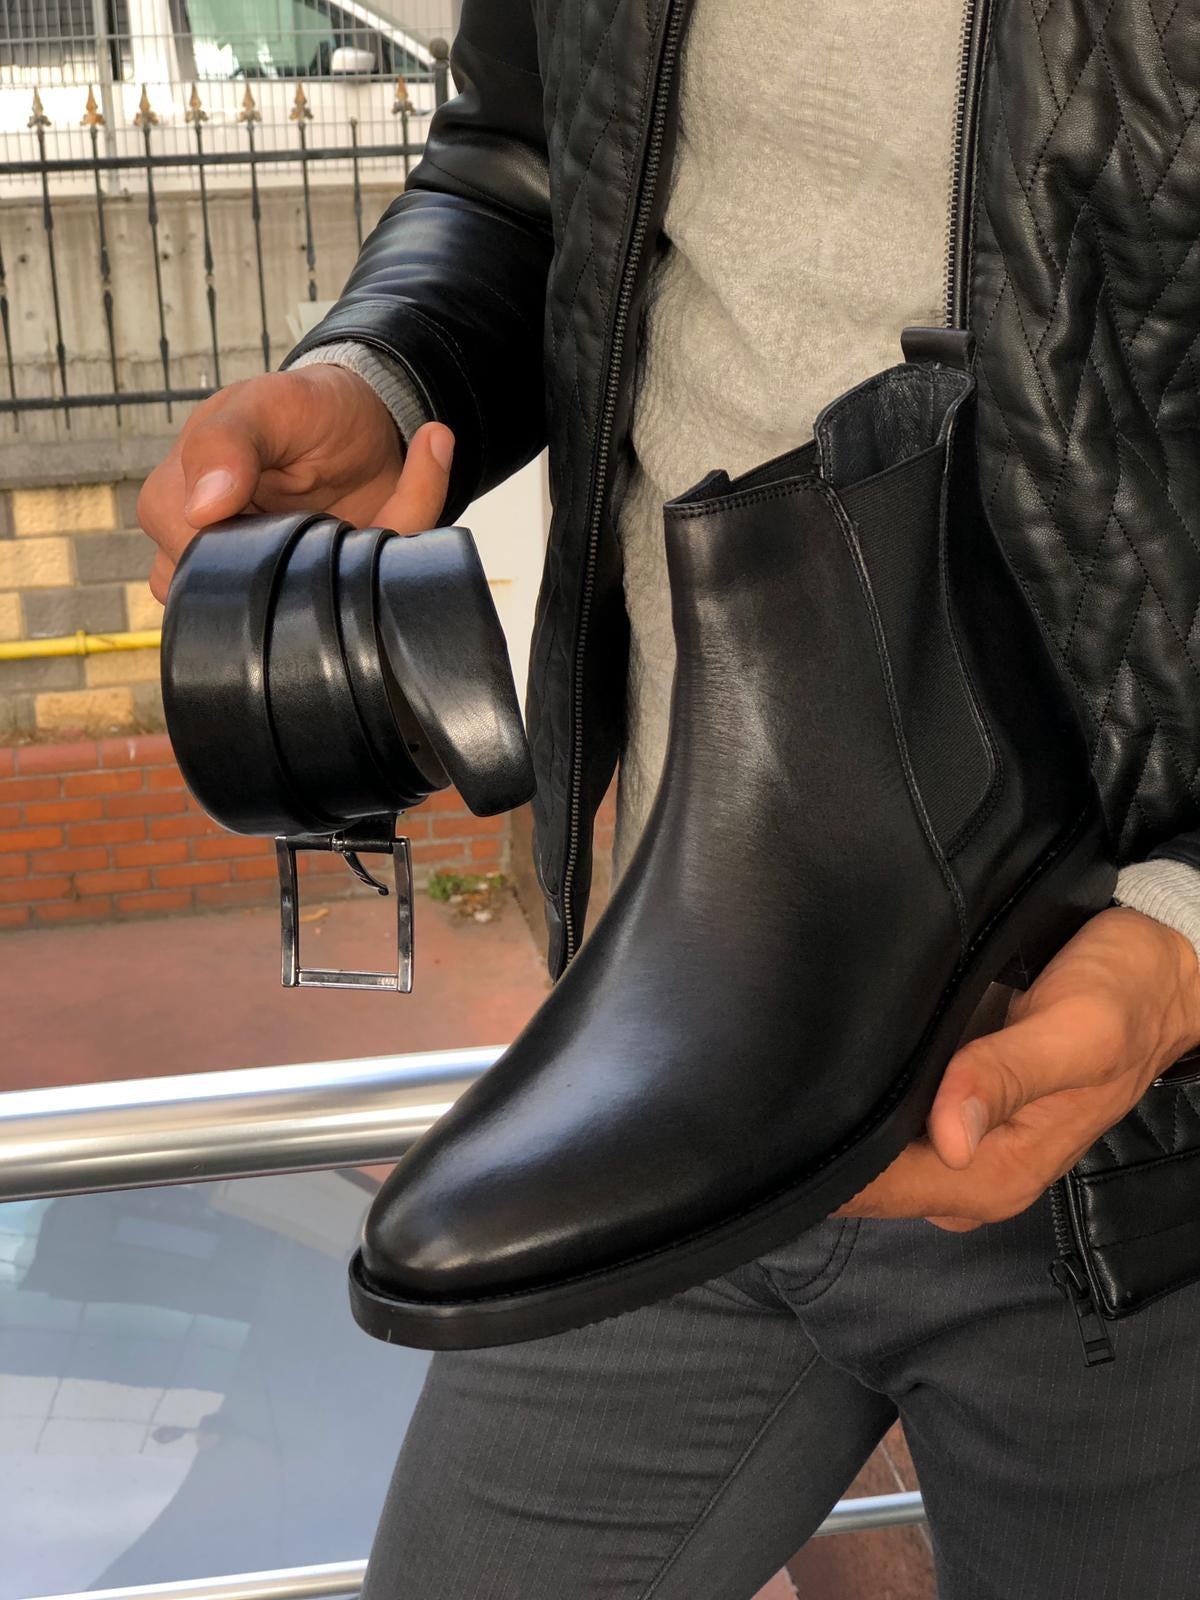 The Aqua Black Chelsea Boots